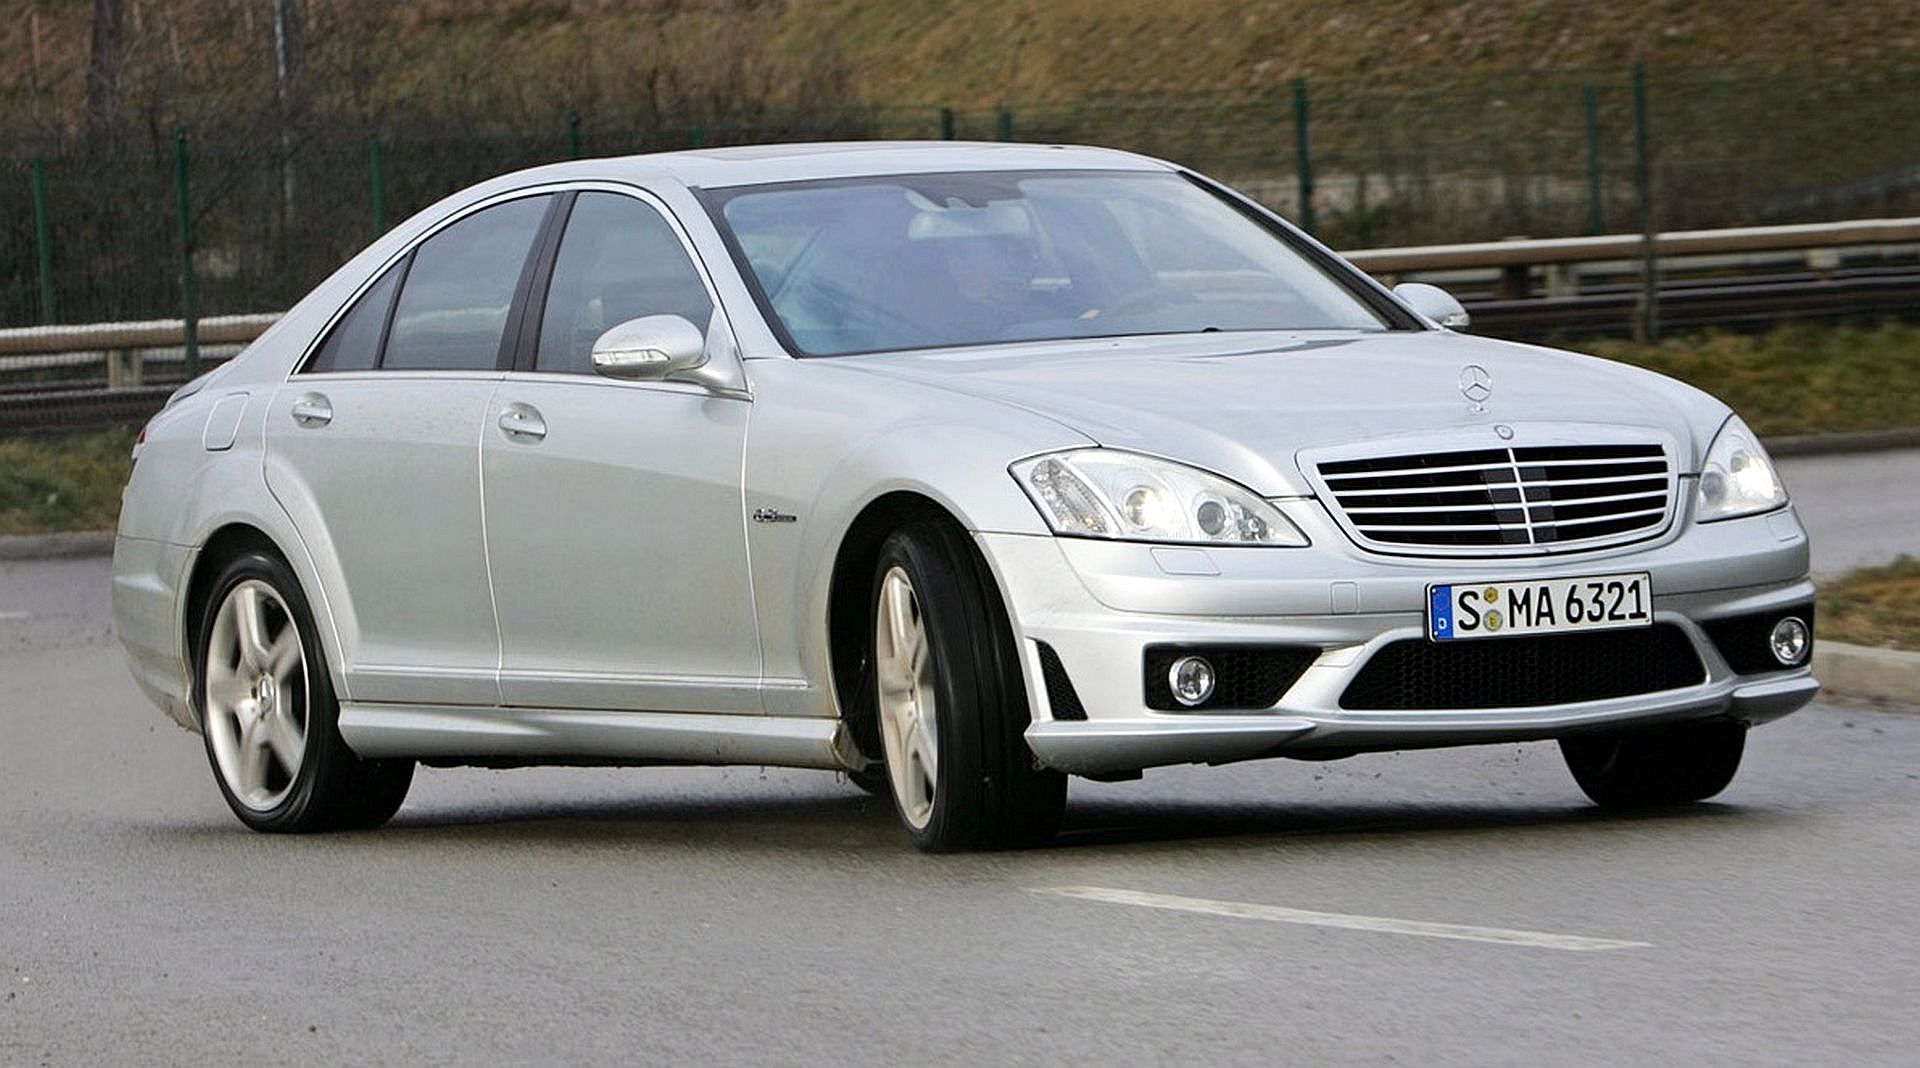 Używany Mercedes Klasy S (W220) I Klasy S (W221) - Którą Generację Wybrać?